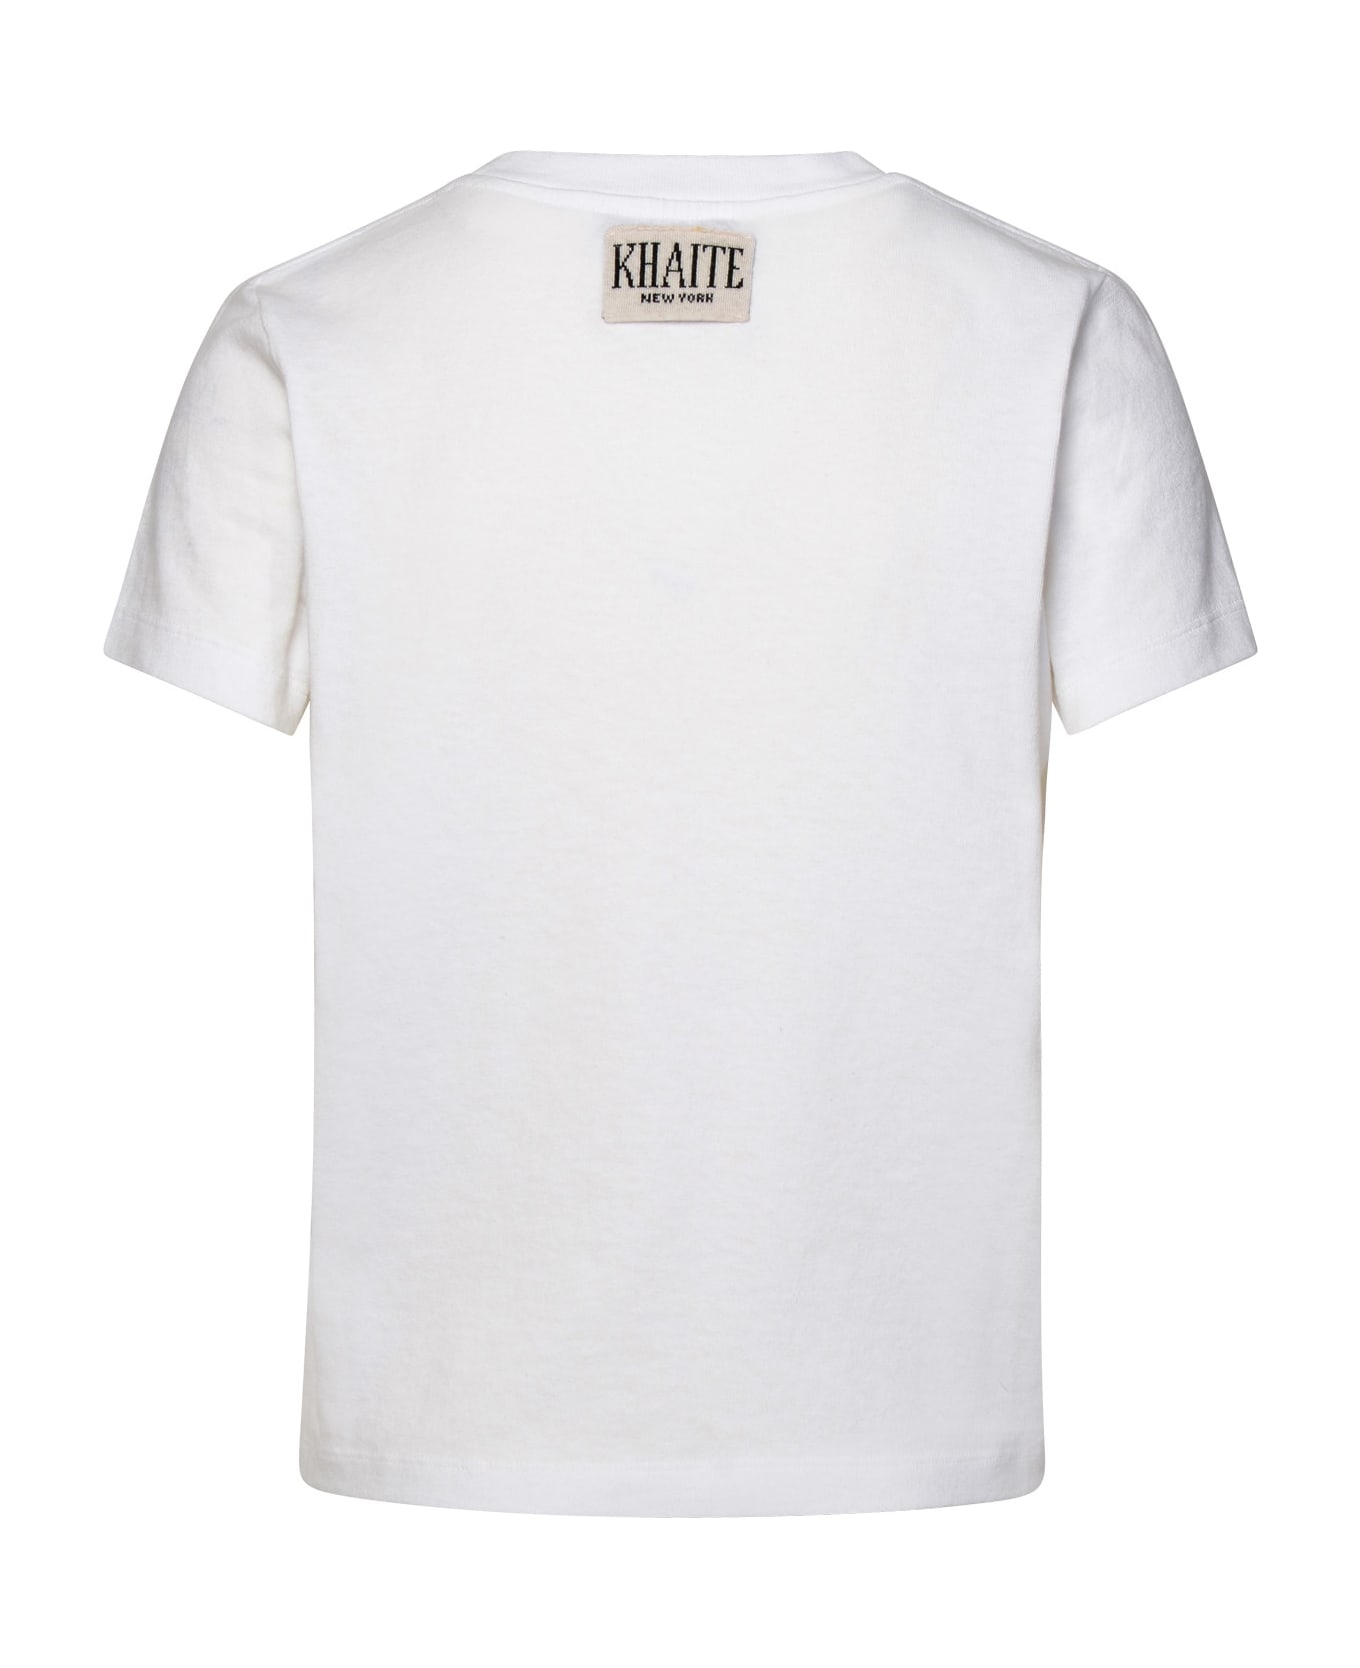 Khaite White Cotton Emmylou T-shirt - White